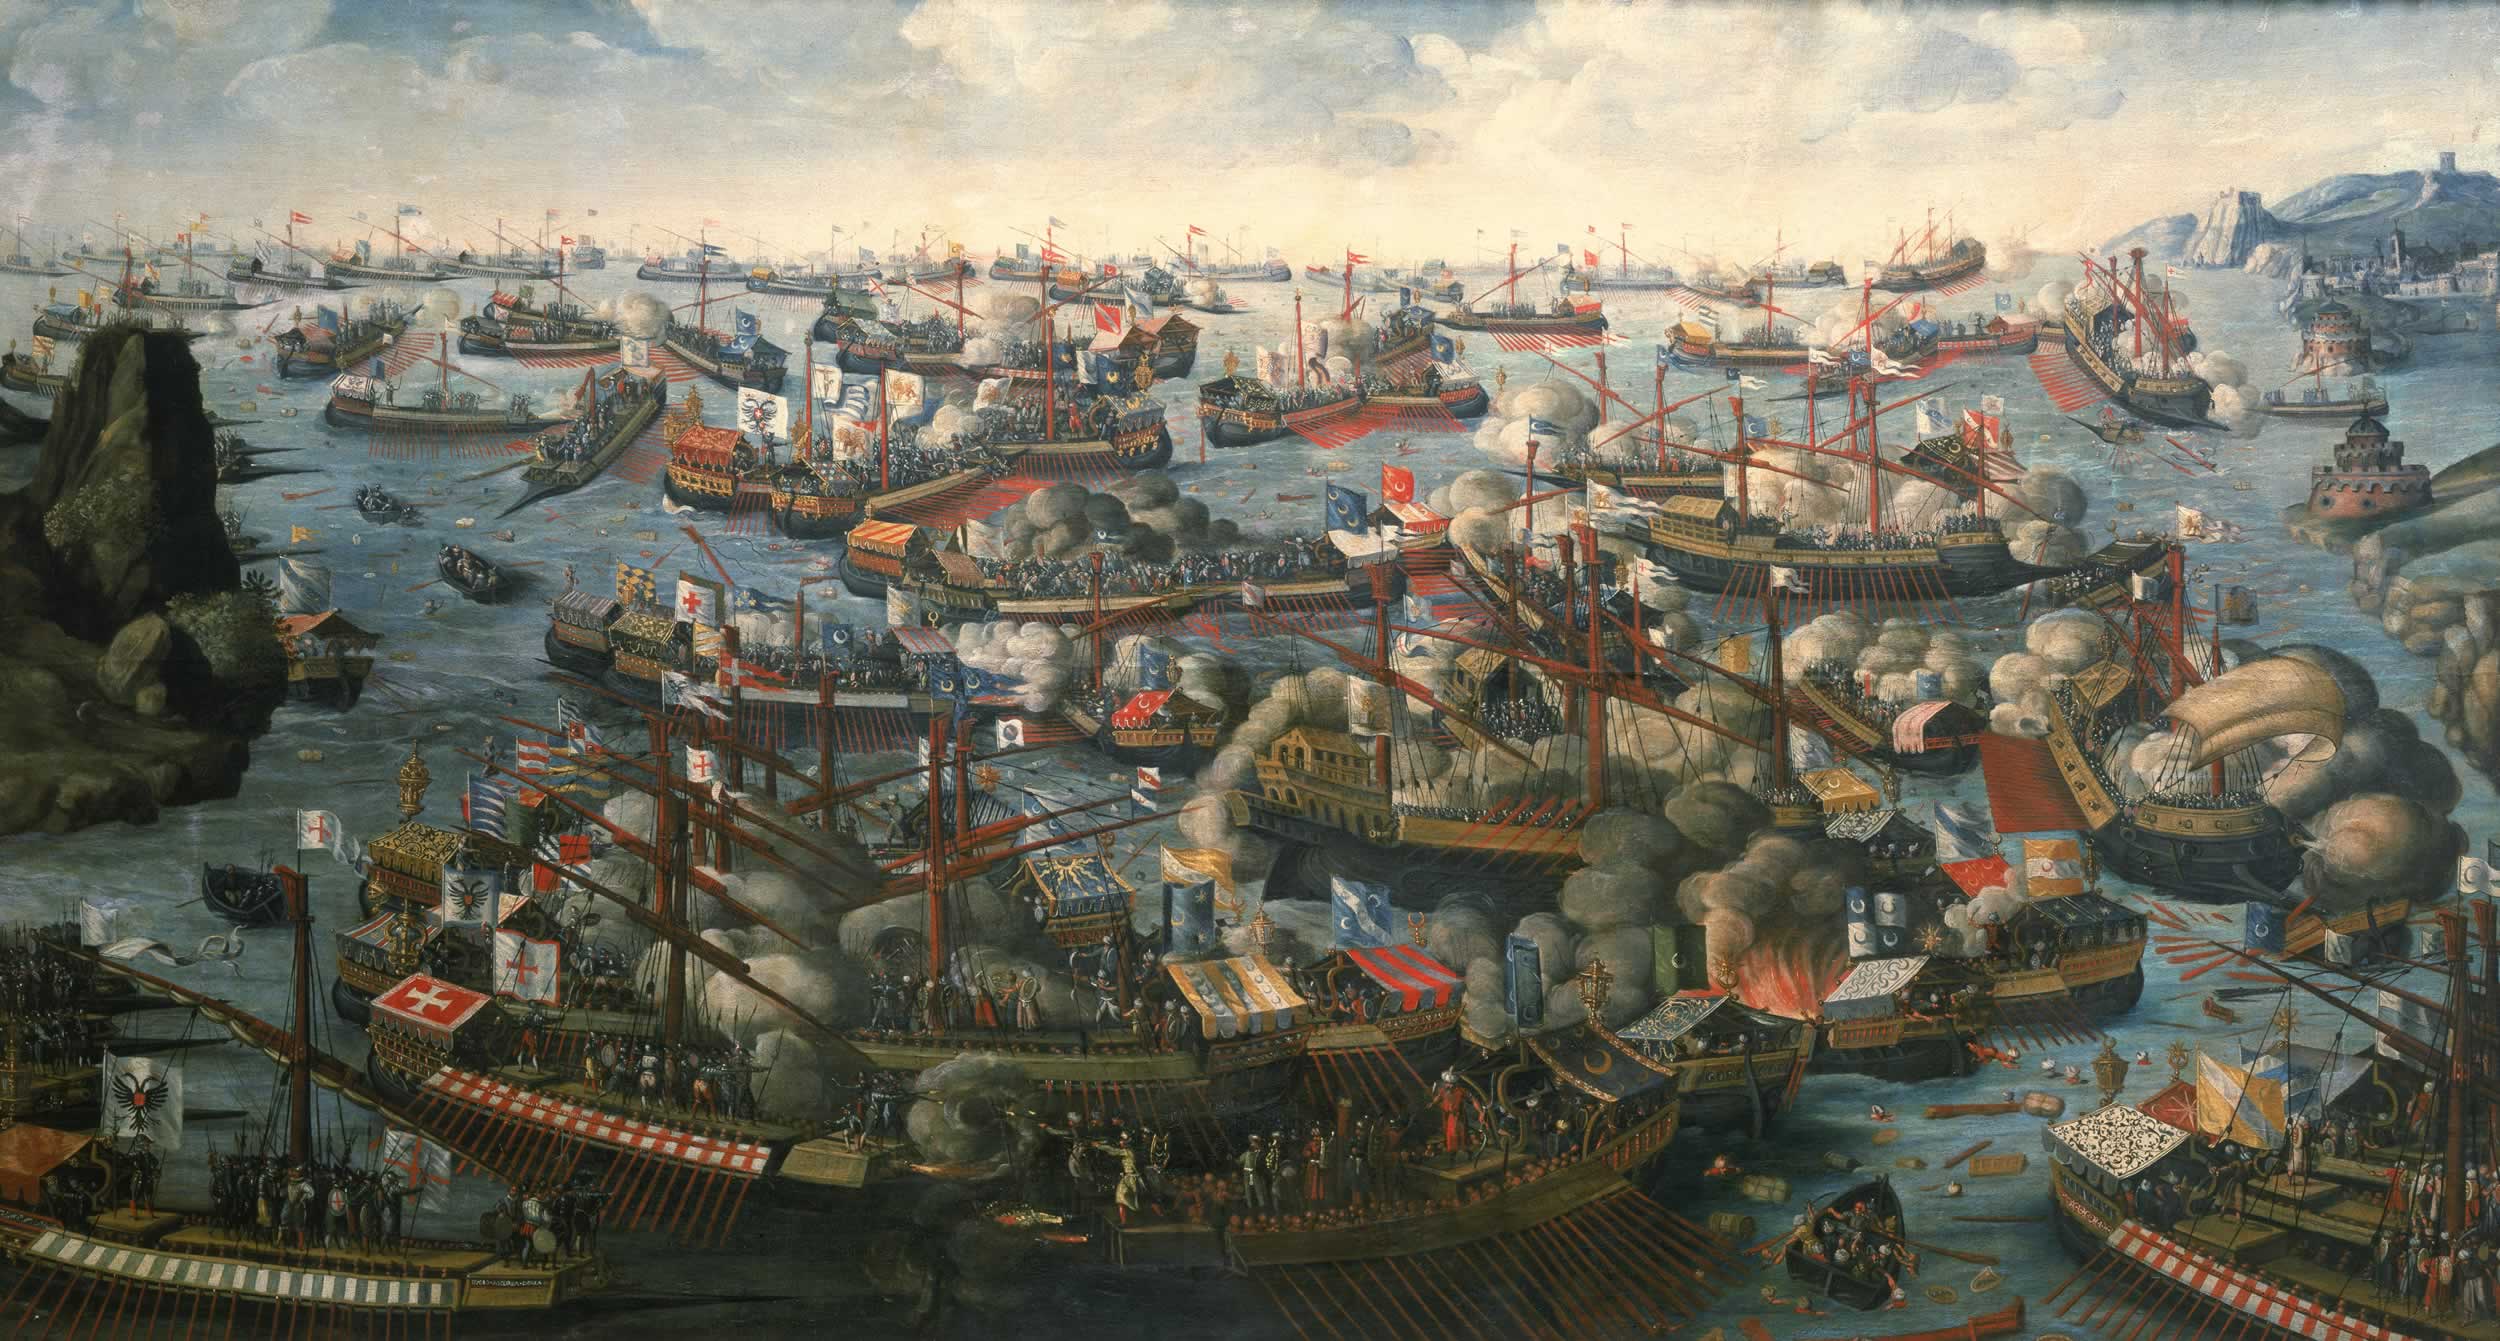 Битва при Лепанто в 1571 году (картина неизвестного художника).
